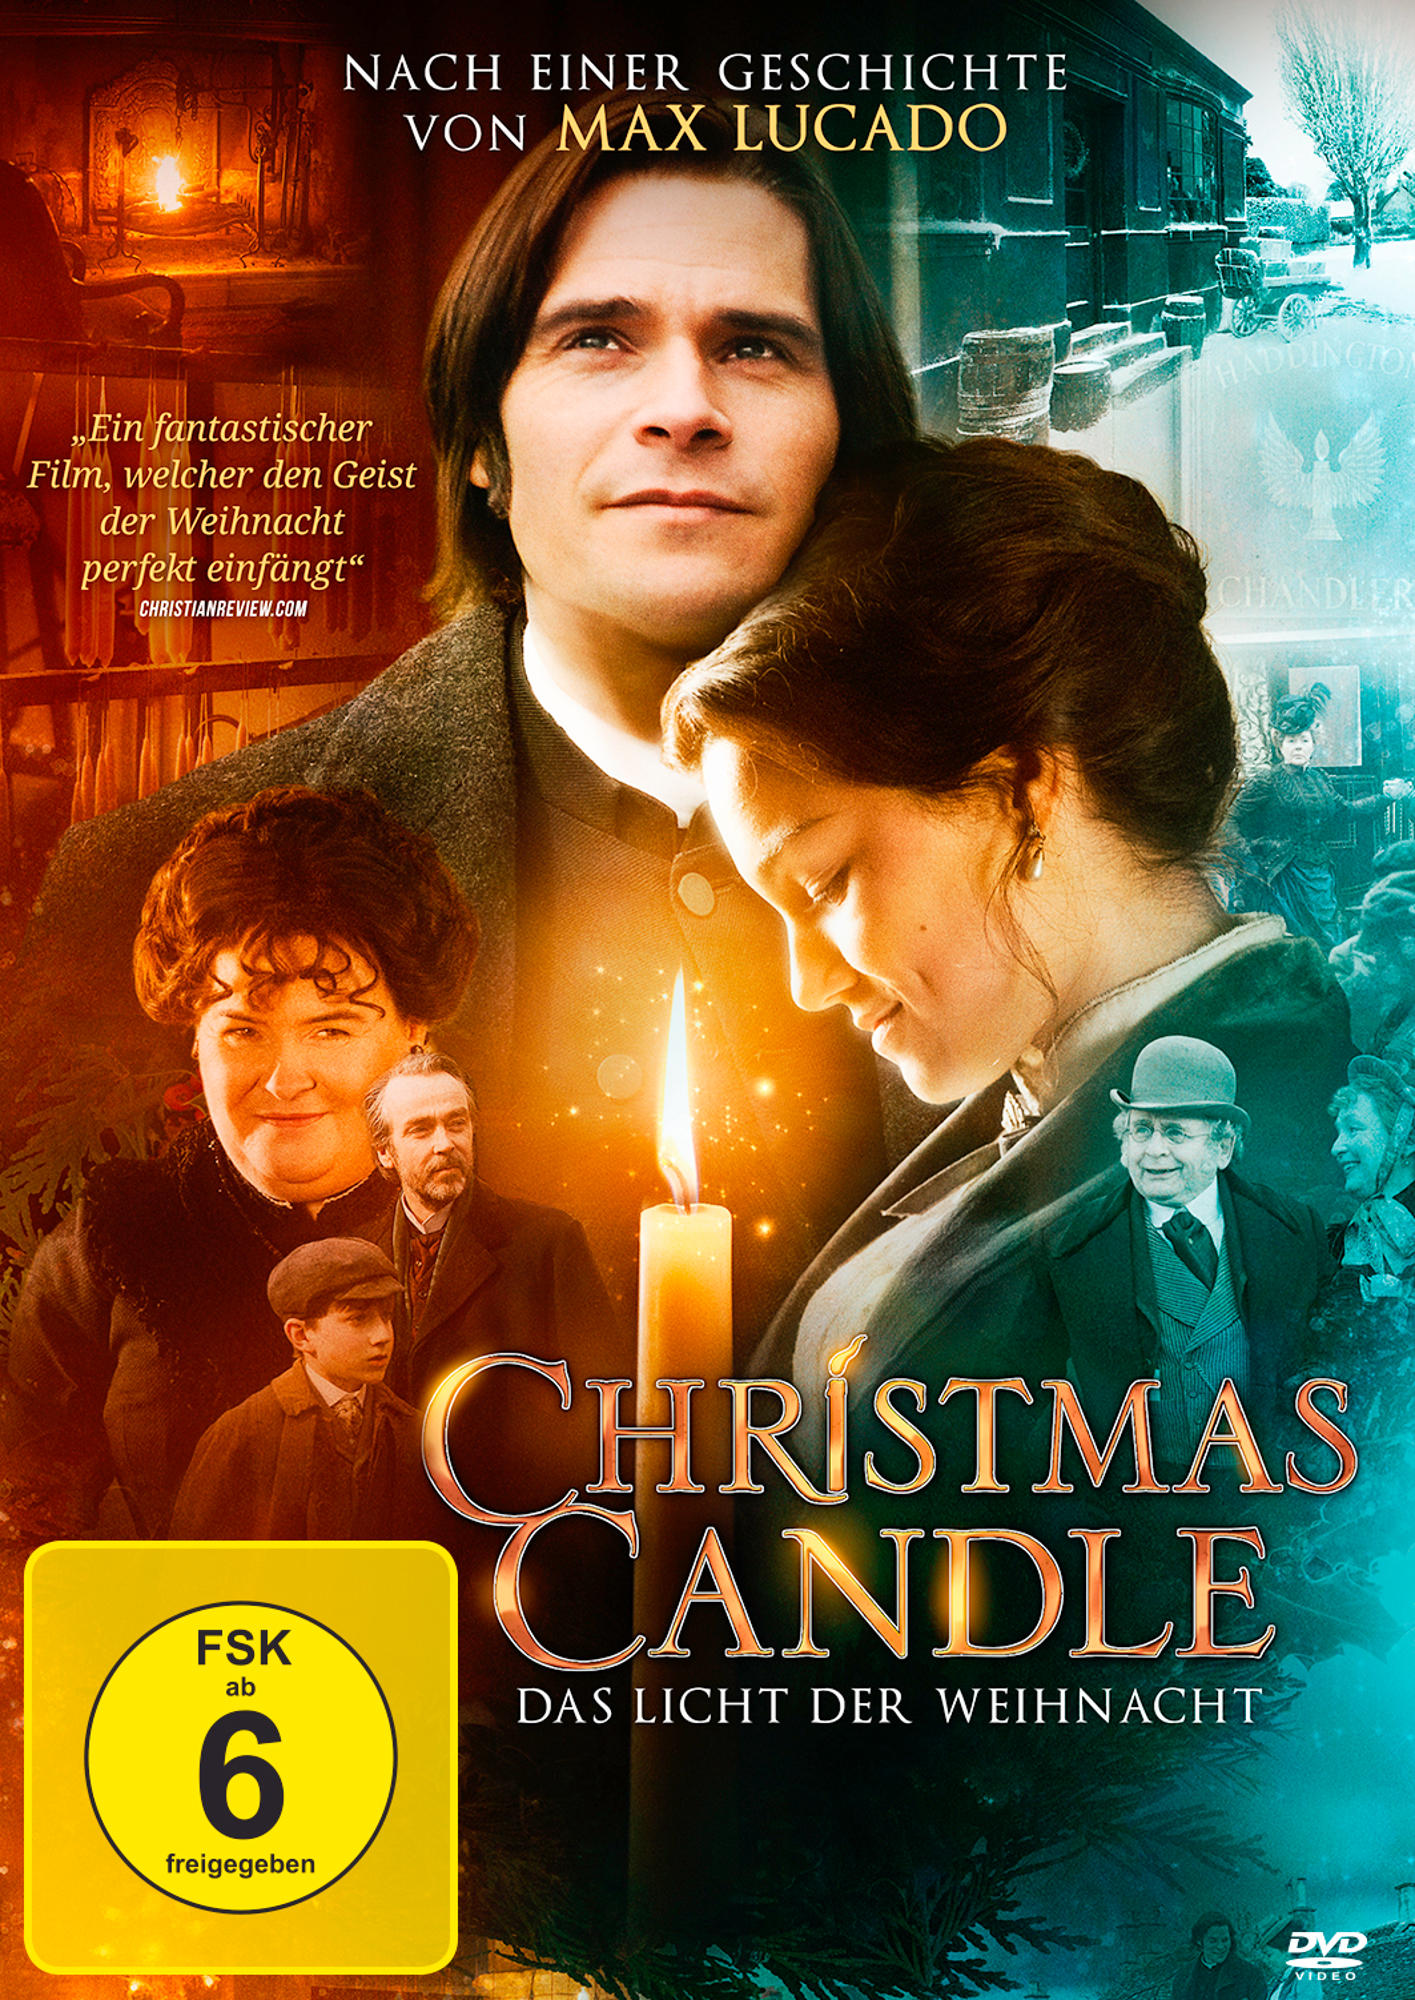 Christmas Candle - Das Weihnachtsnacht der Licht DVD